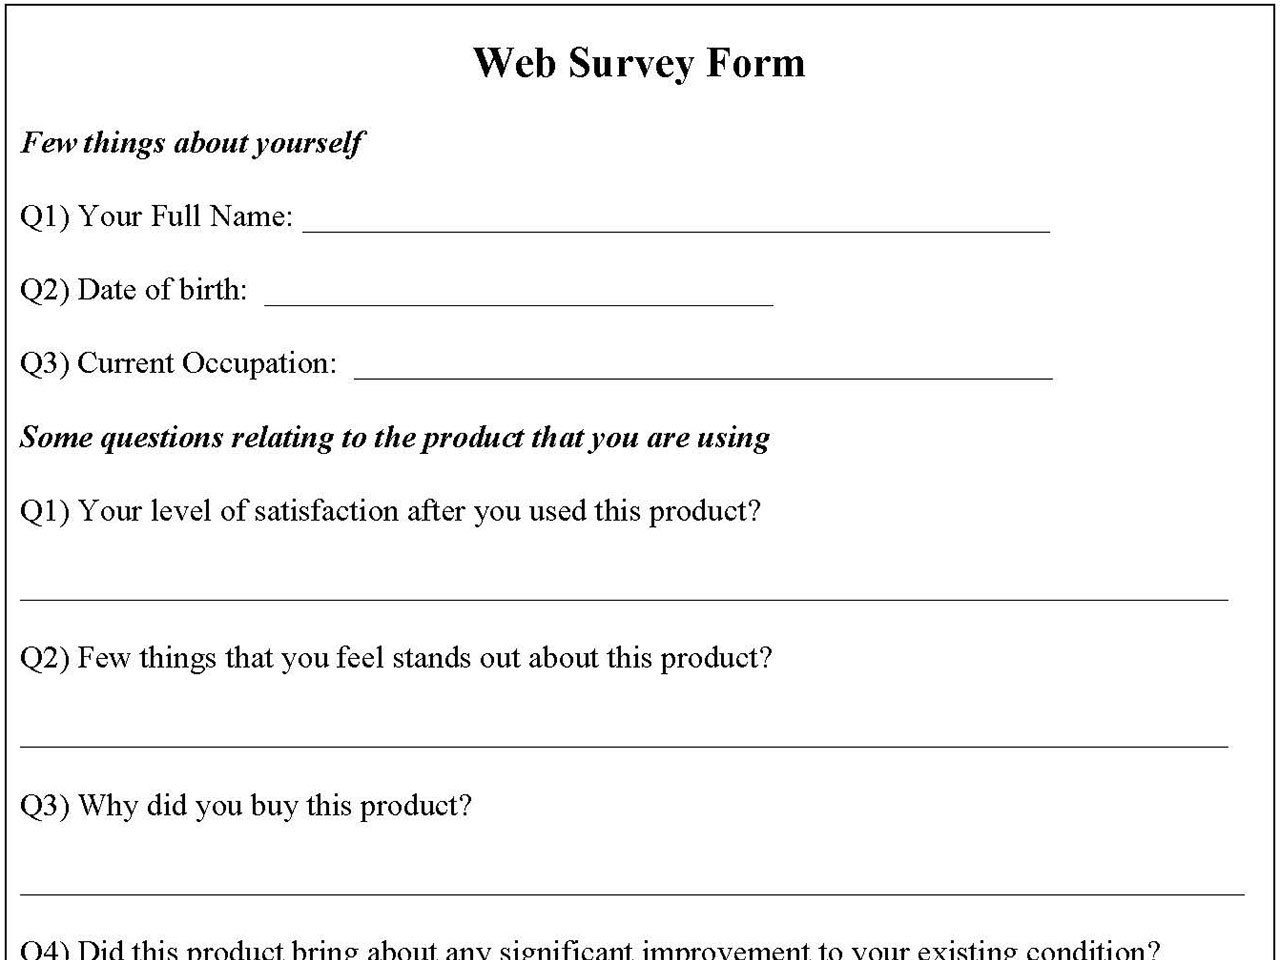 Web survey form